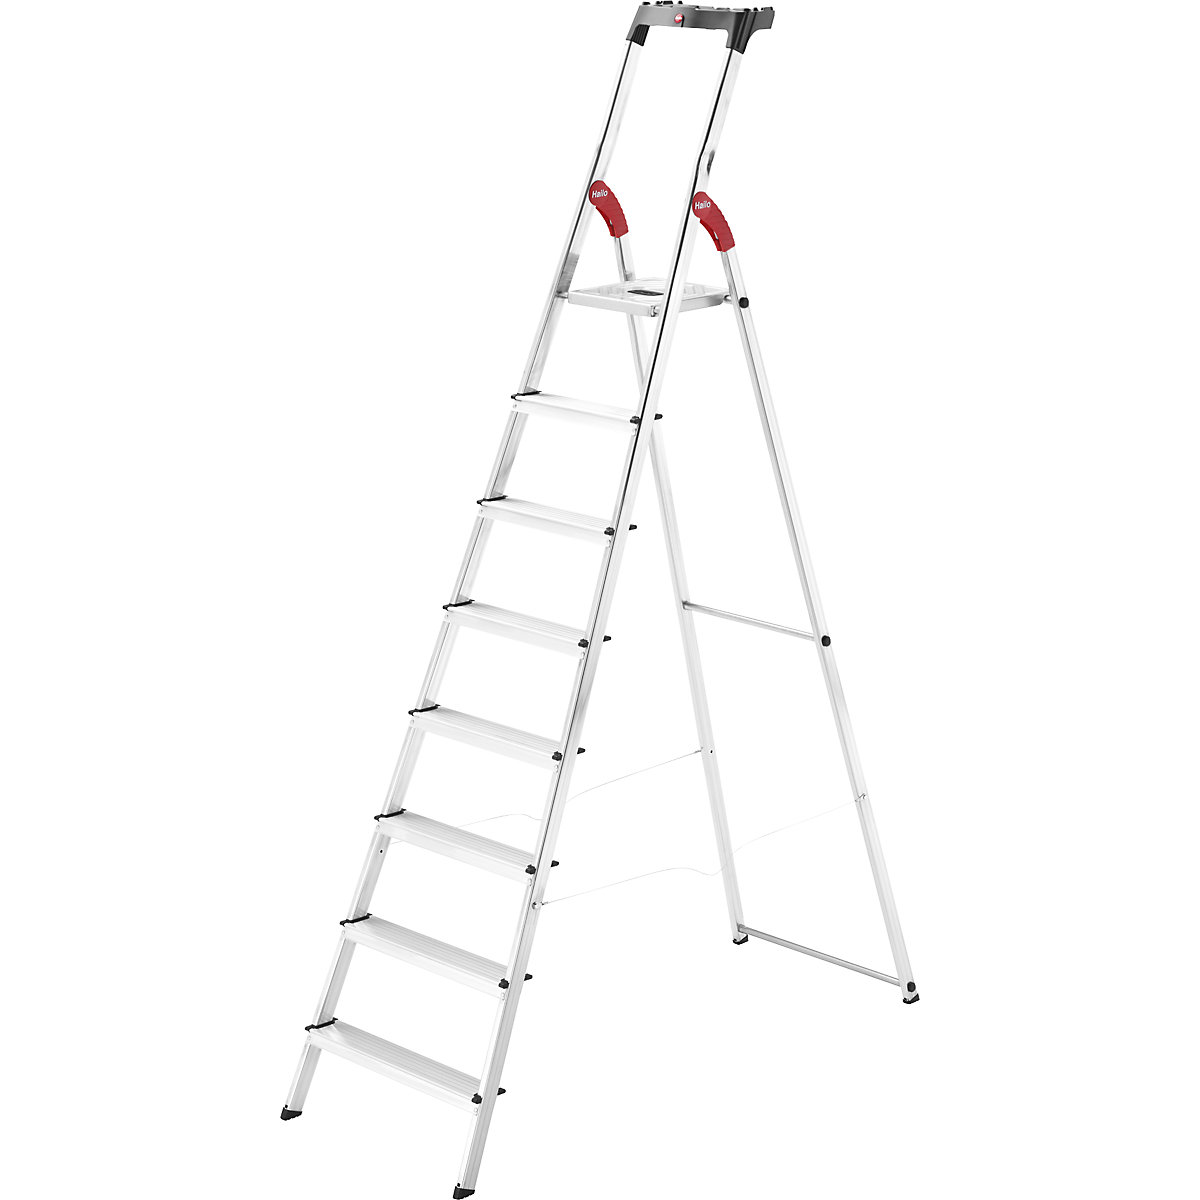 Aluminijasta dvokraka lestev s stopnicami StandardLine L60 – Hailo, nosilnost 150 kg, 8 stopnic